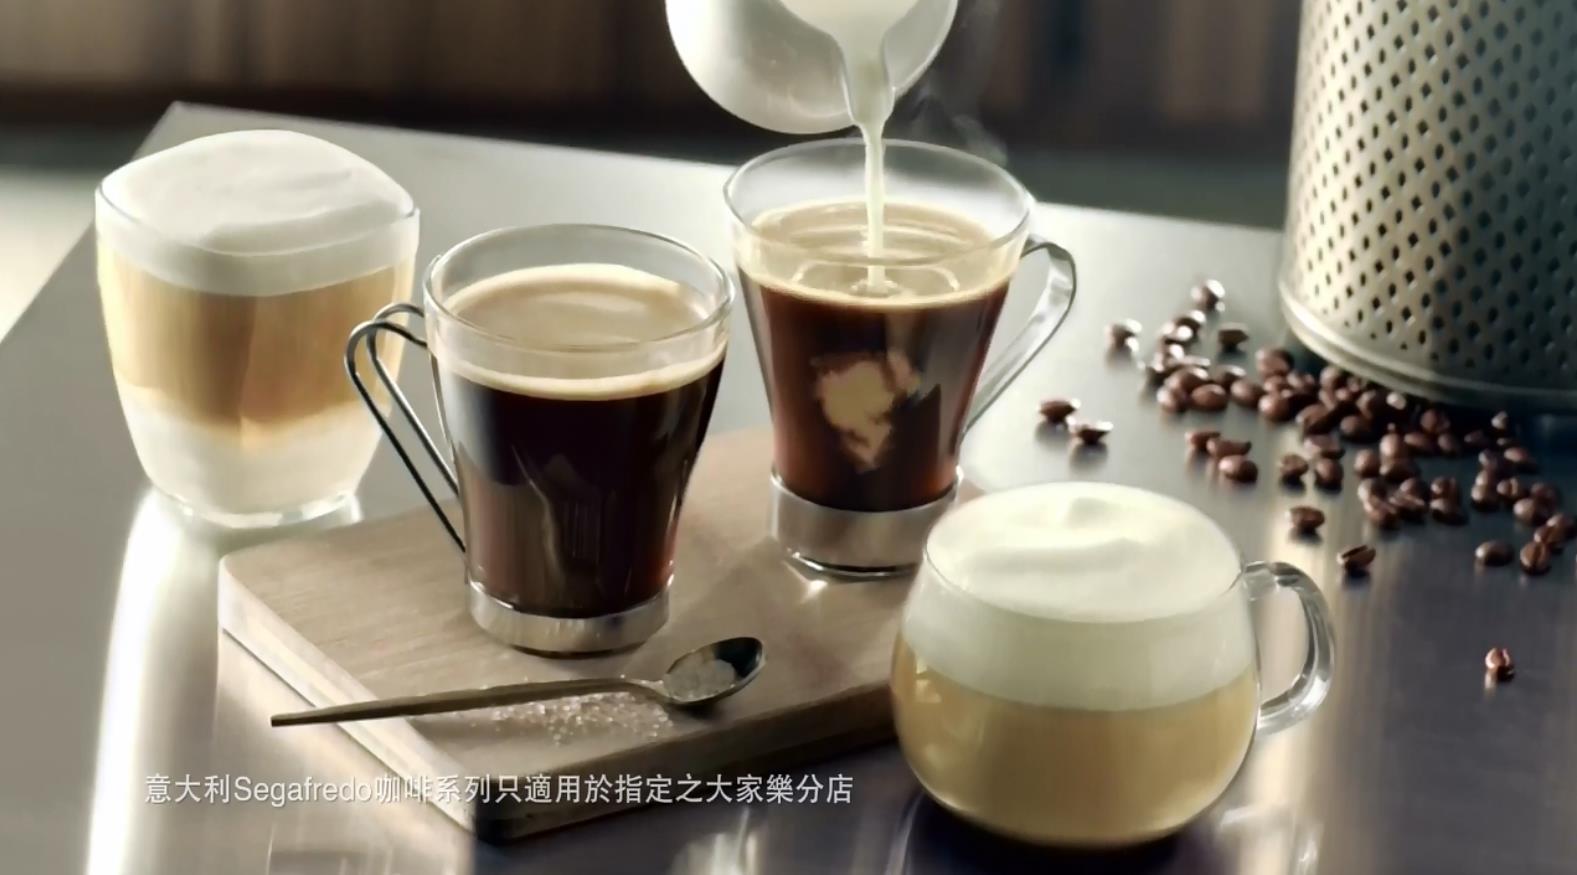 [香港广告])大家乐 Segafredo咖啡广告